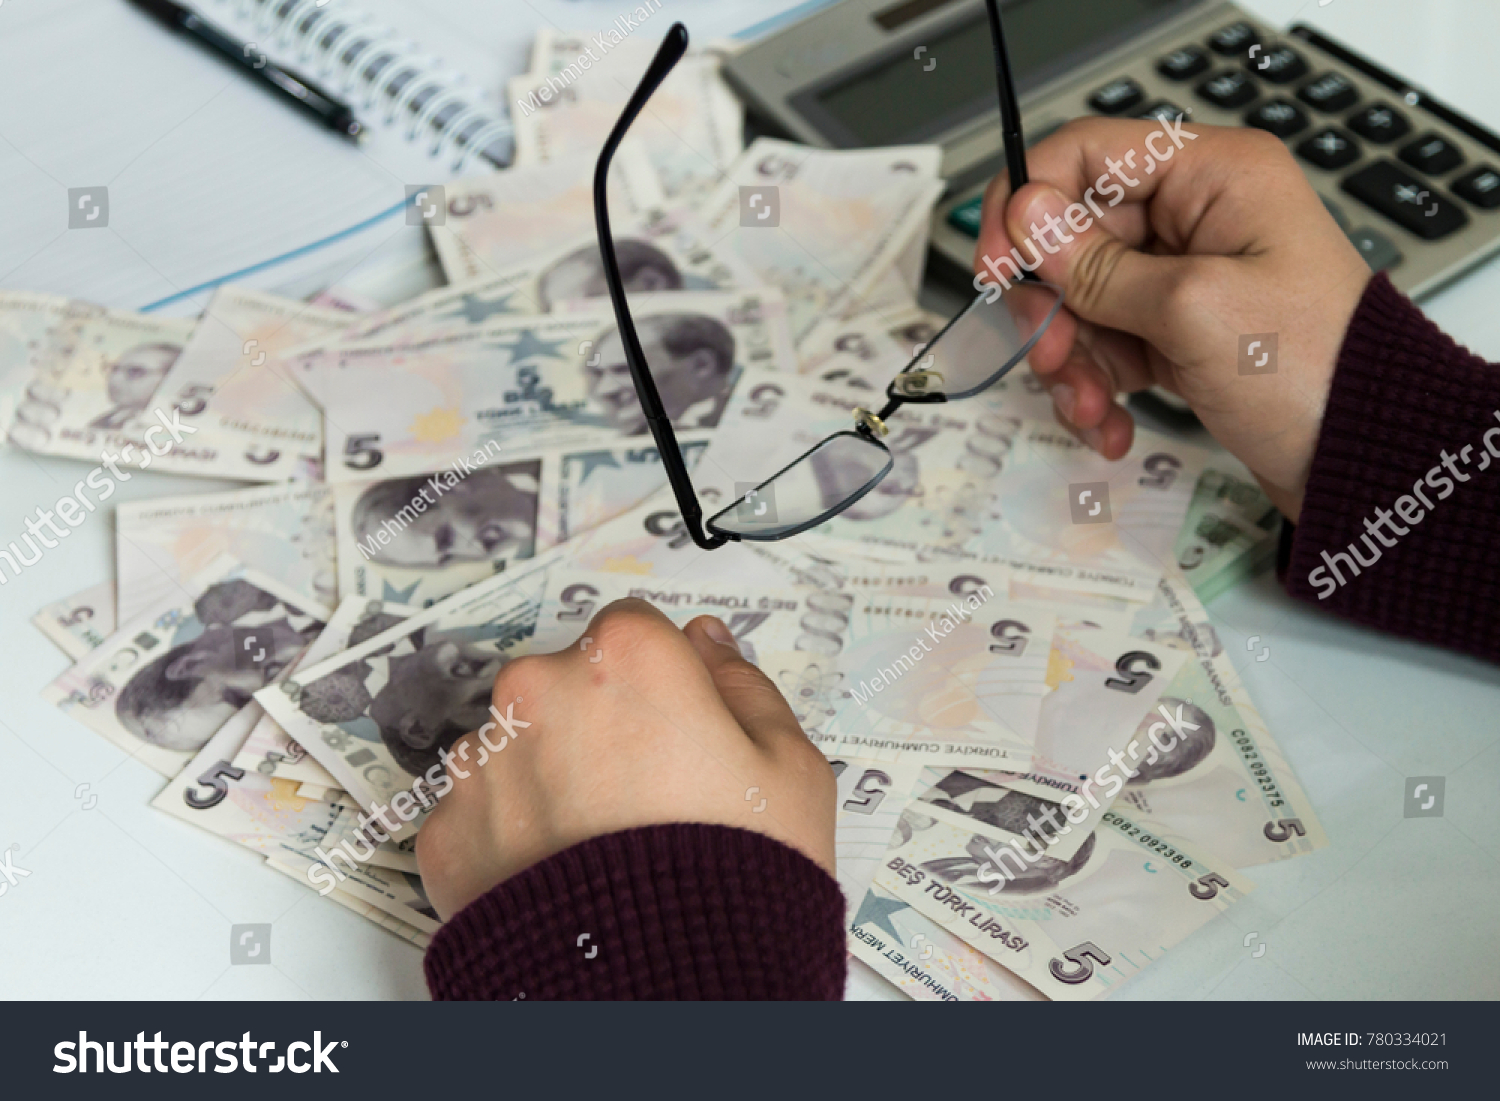 Turkish Money ( Turkish Turk Lirasi ) #780334021